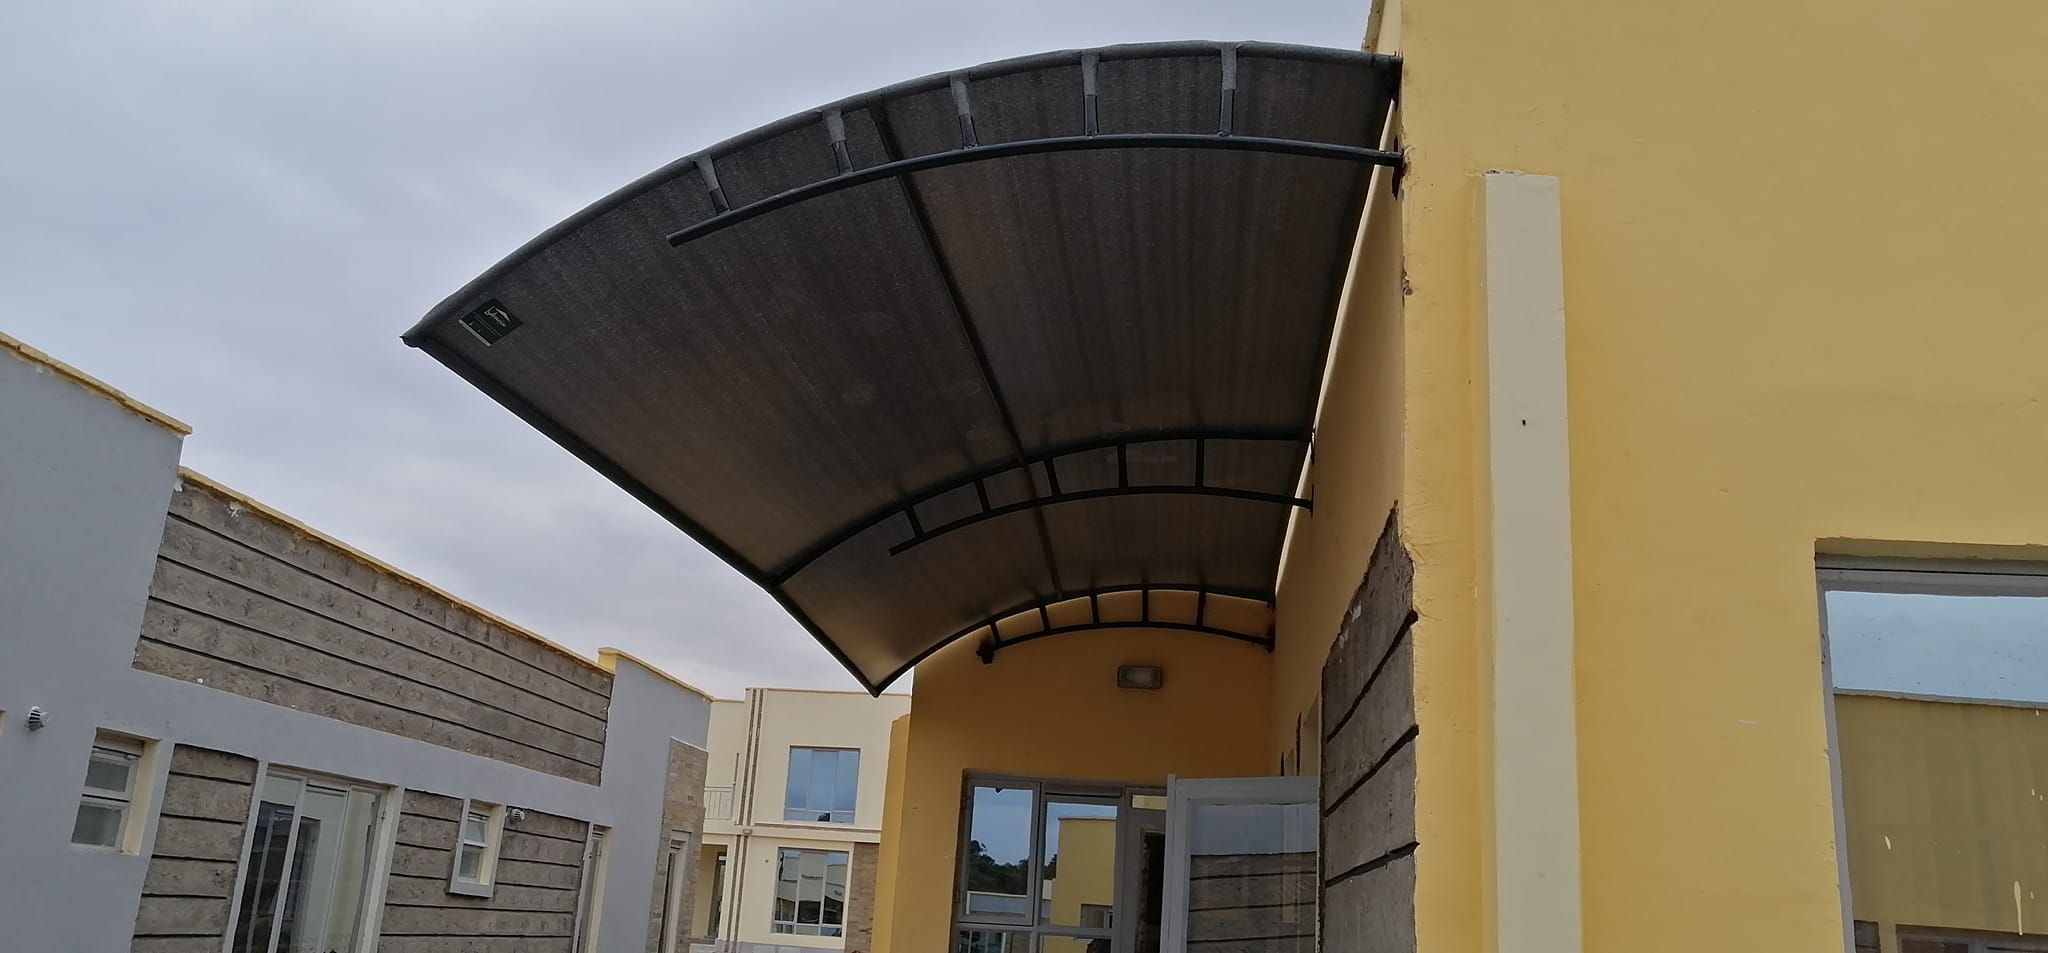 Shade Net Canopy-Verandah Covers-Patio Covers-Balcony Covers-Garden Shades-Backyard Shades-Terrace Shades-Rooftop Shades-Pool Area Shades-Outdoor Shades